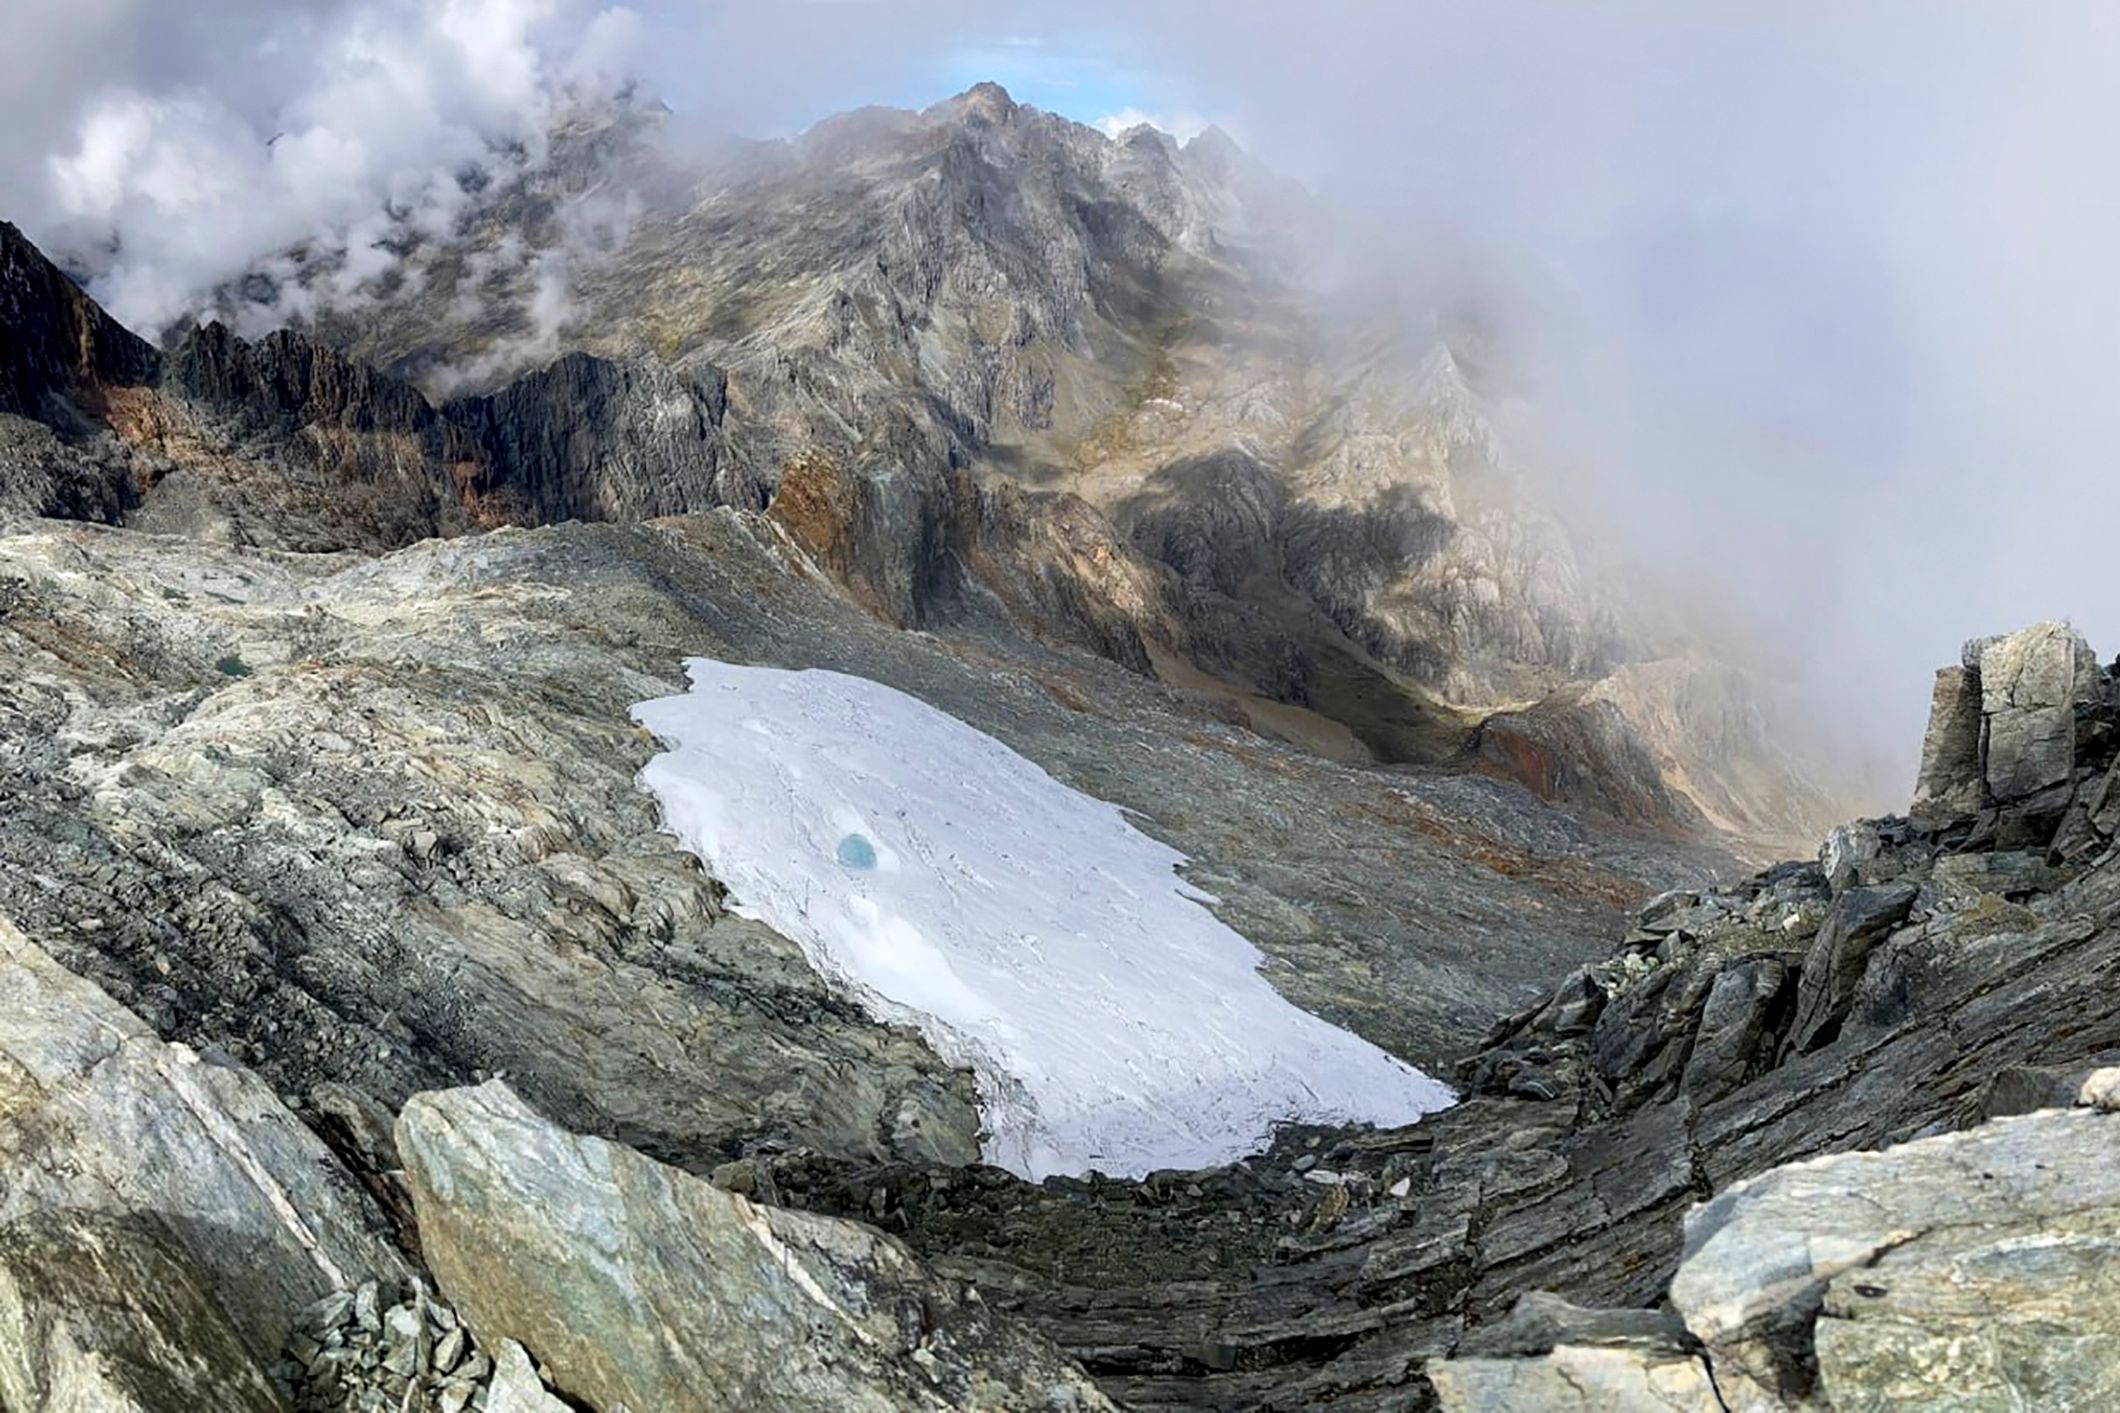 Une couverture thermoplastique pour sauver un glacier: «absurde» selon les experts